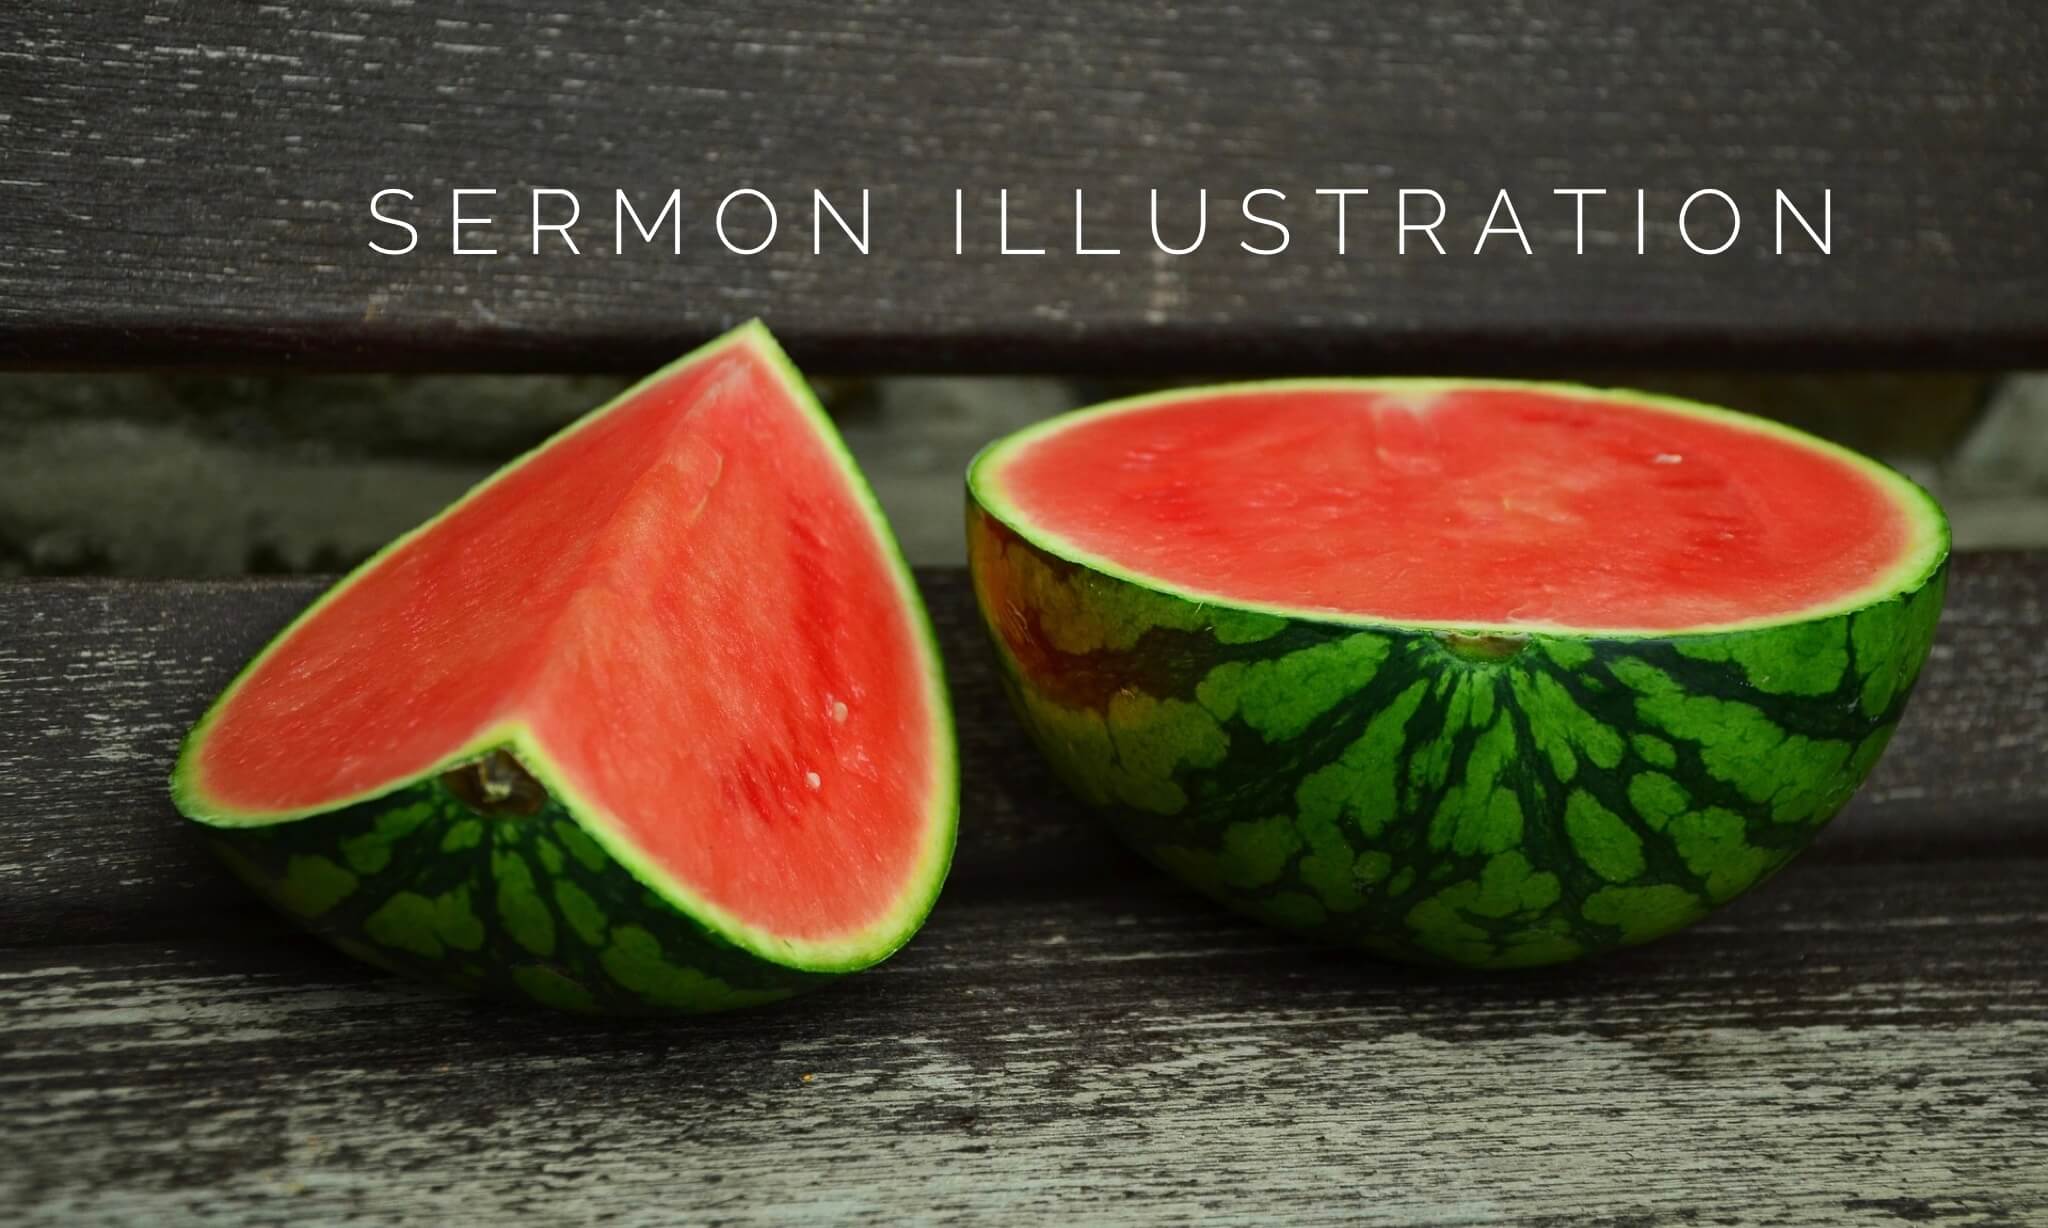 Mark Twain Stole Watermelons (Sermon Illustration)